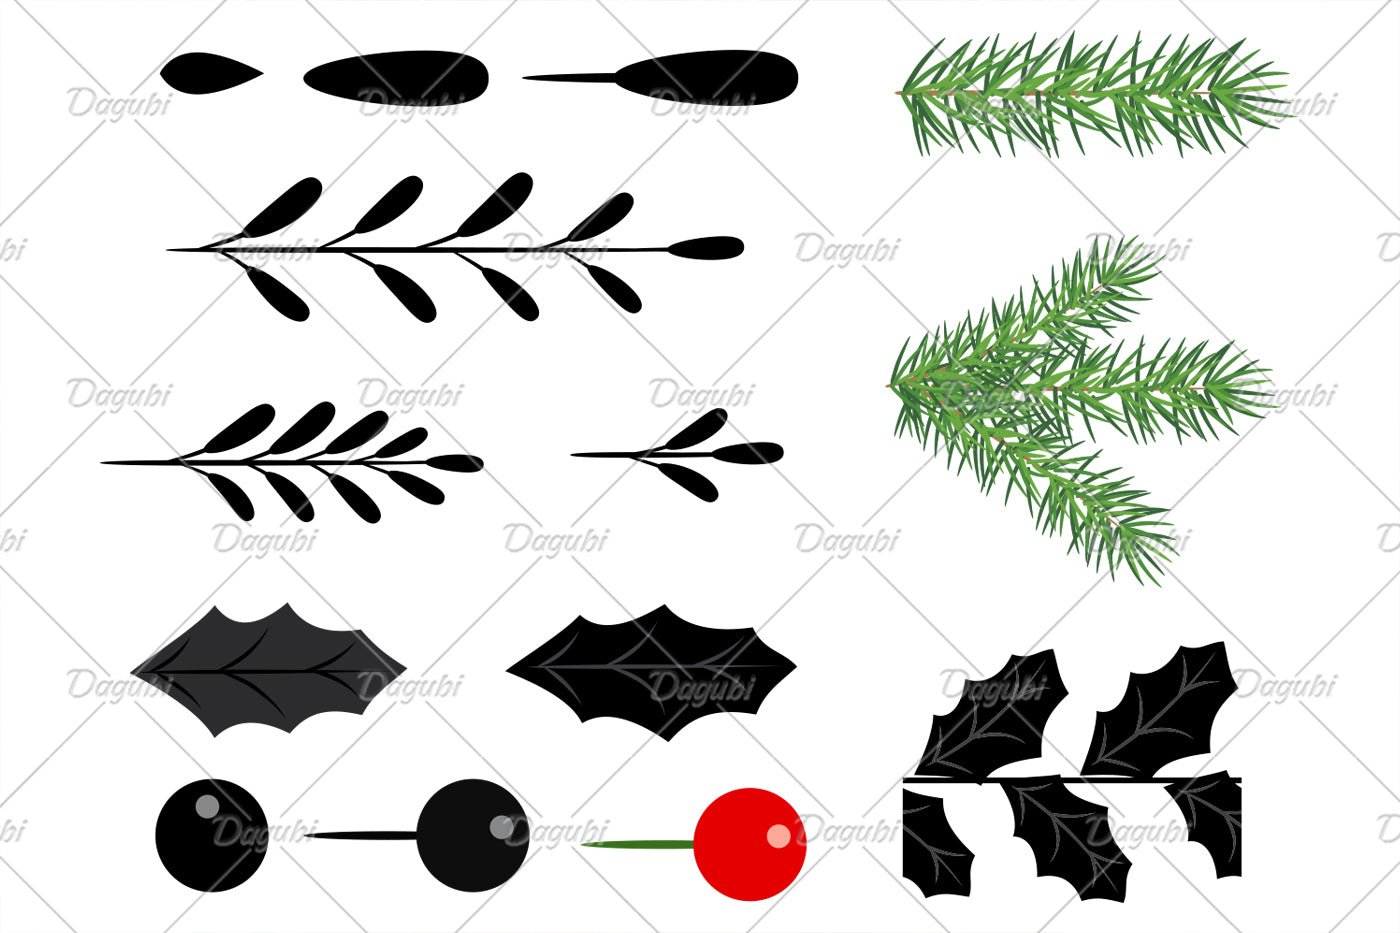 Christmas Wreath Brushes - Adobe Illustrator Vector Brushes